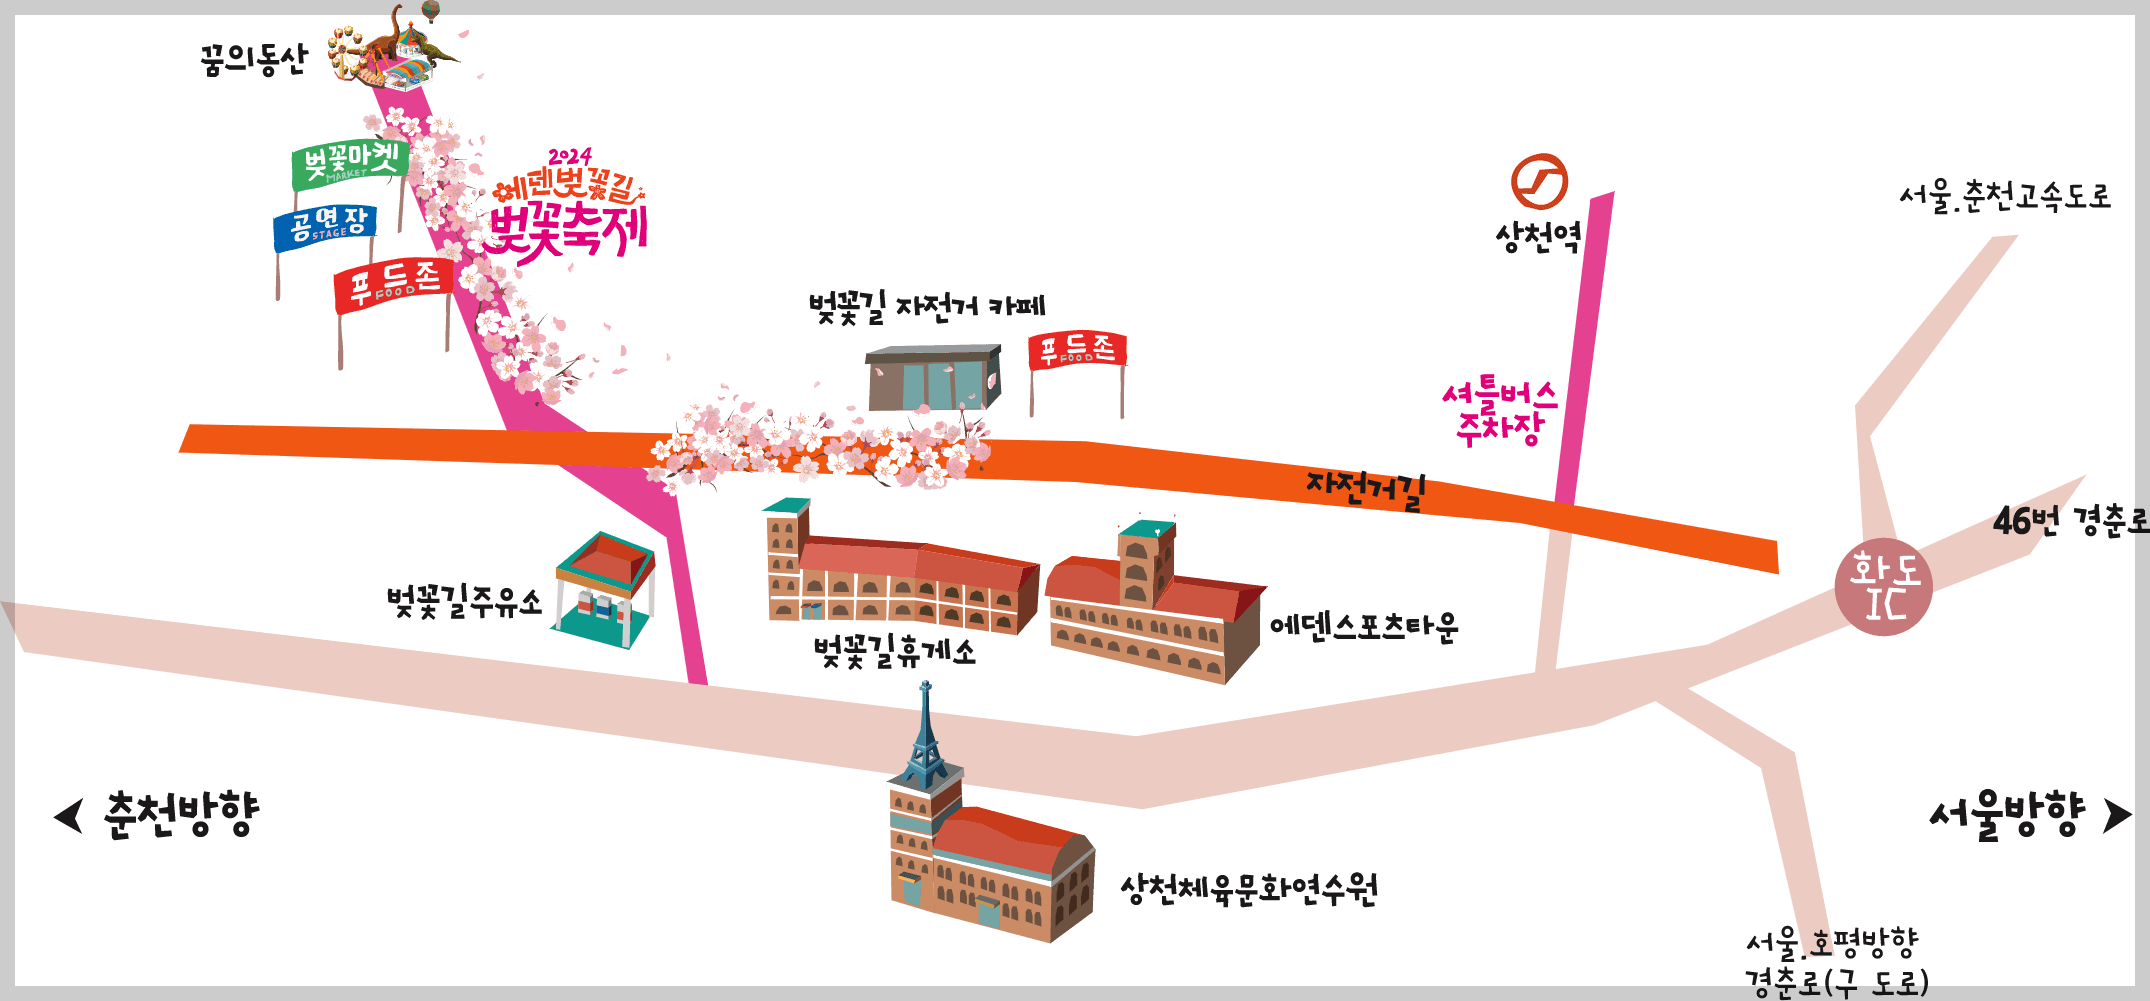 에덴벚꽃길 벚꽃축제 오시는길 대중교통